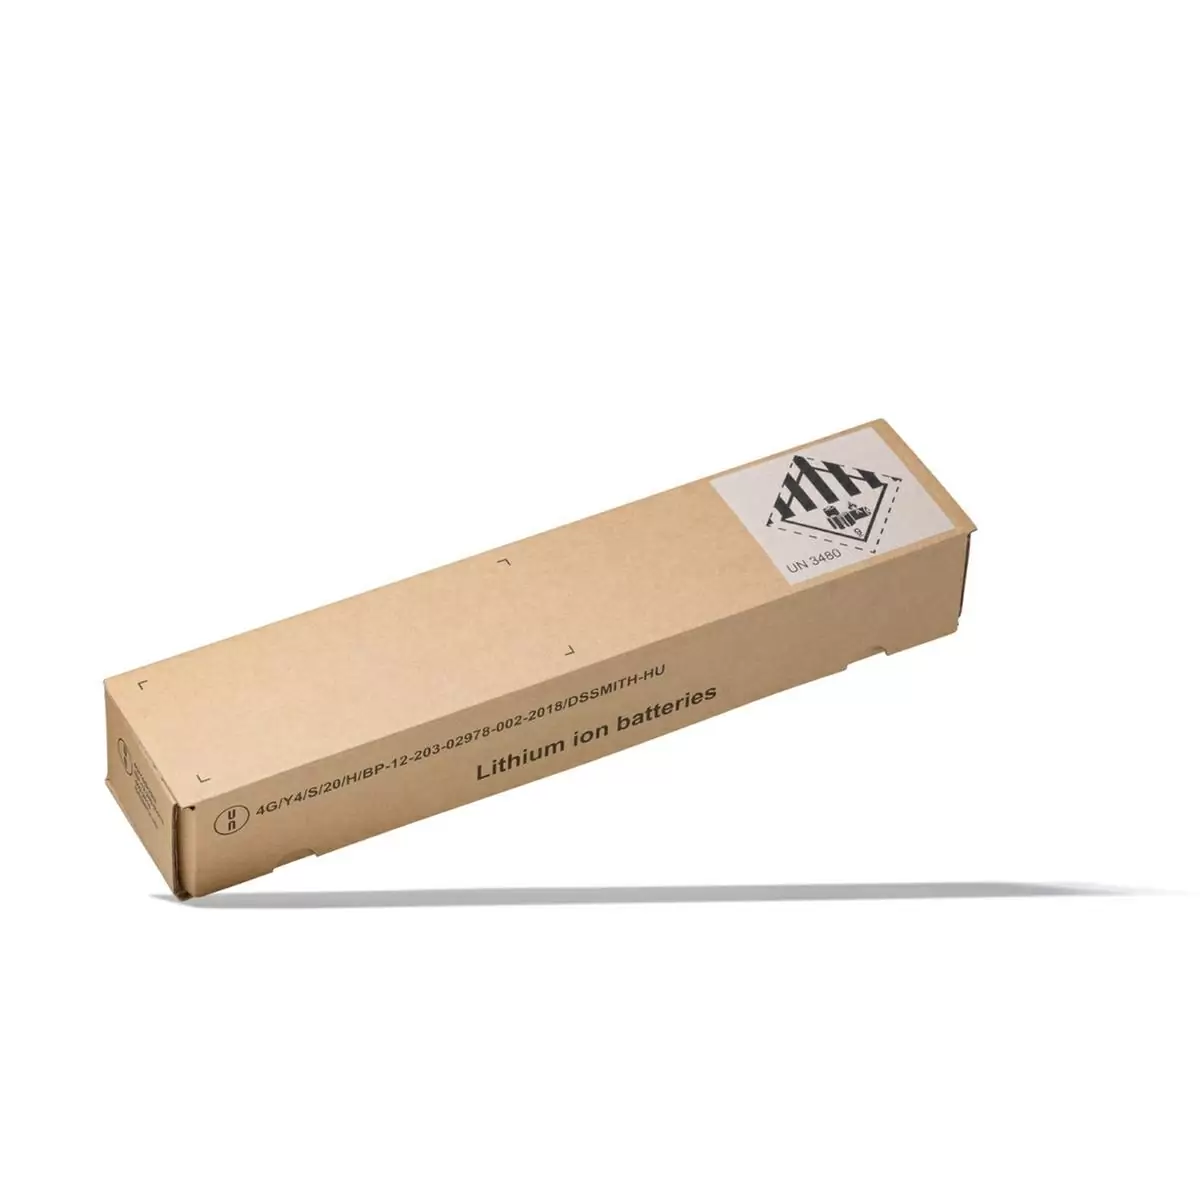 PowerTube 750wh battery dangerous goods transport packaging - image